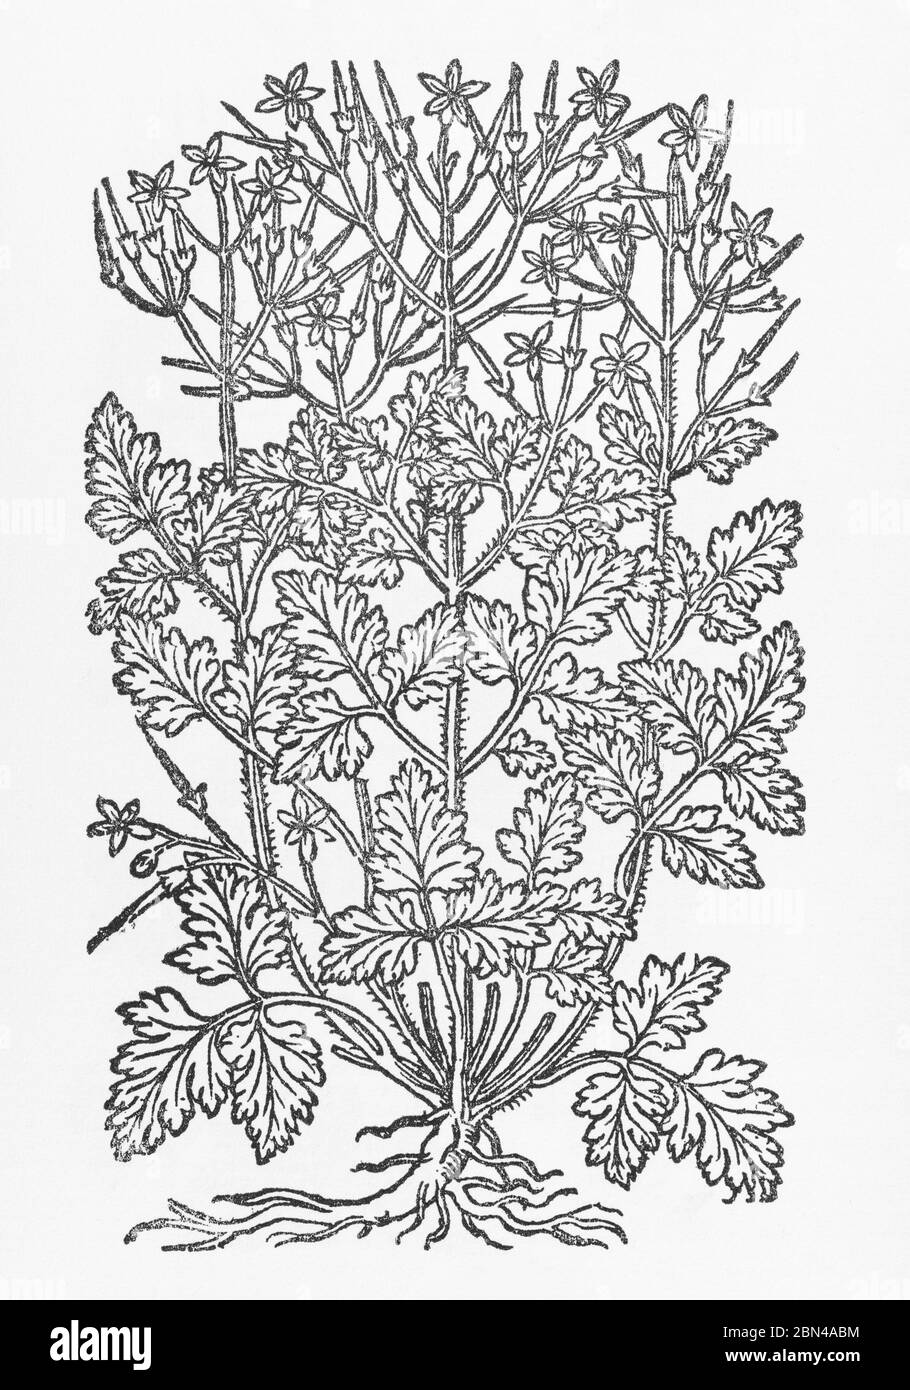 Herb Robert / Geranium robertianum Pflanze Holzschnitt aus Gerardes Herball, Geschichte der Pflanzen. Ist eine bekannte Heilpflanze für Heilmittel. P794. Stockfoto